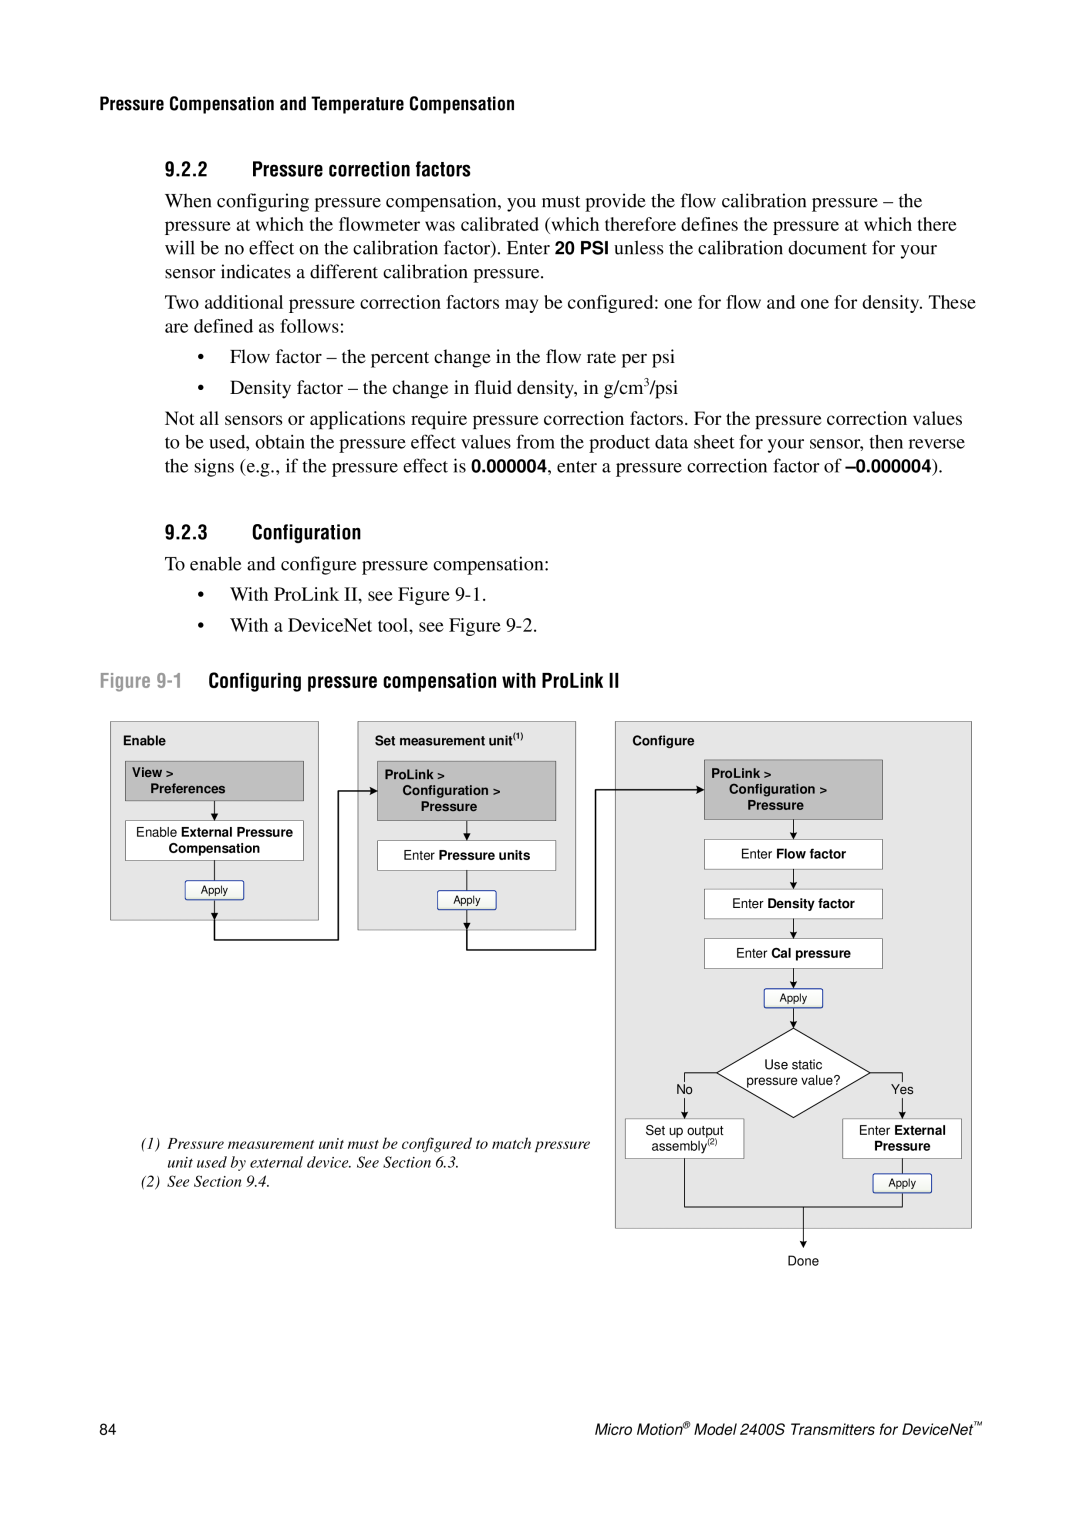 Emerson Process Management 2400S manual 9.2.2Pressure correction factors, 9.2.3Configuration 